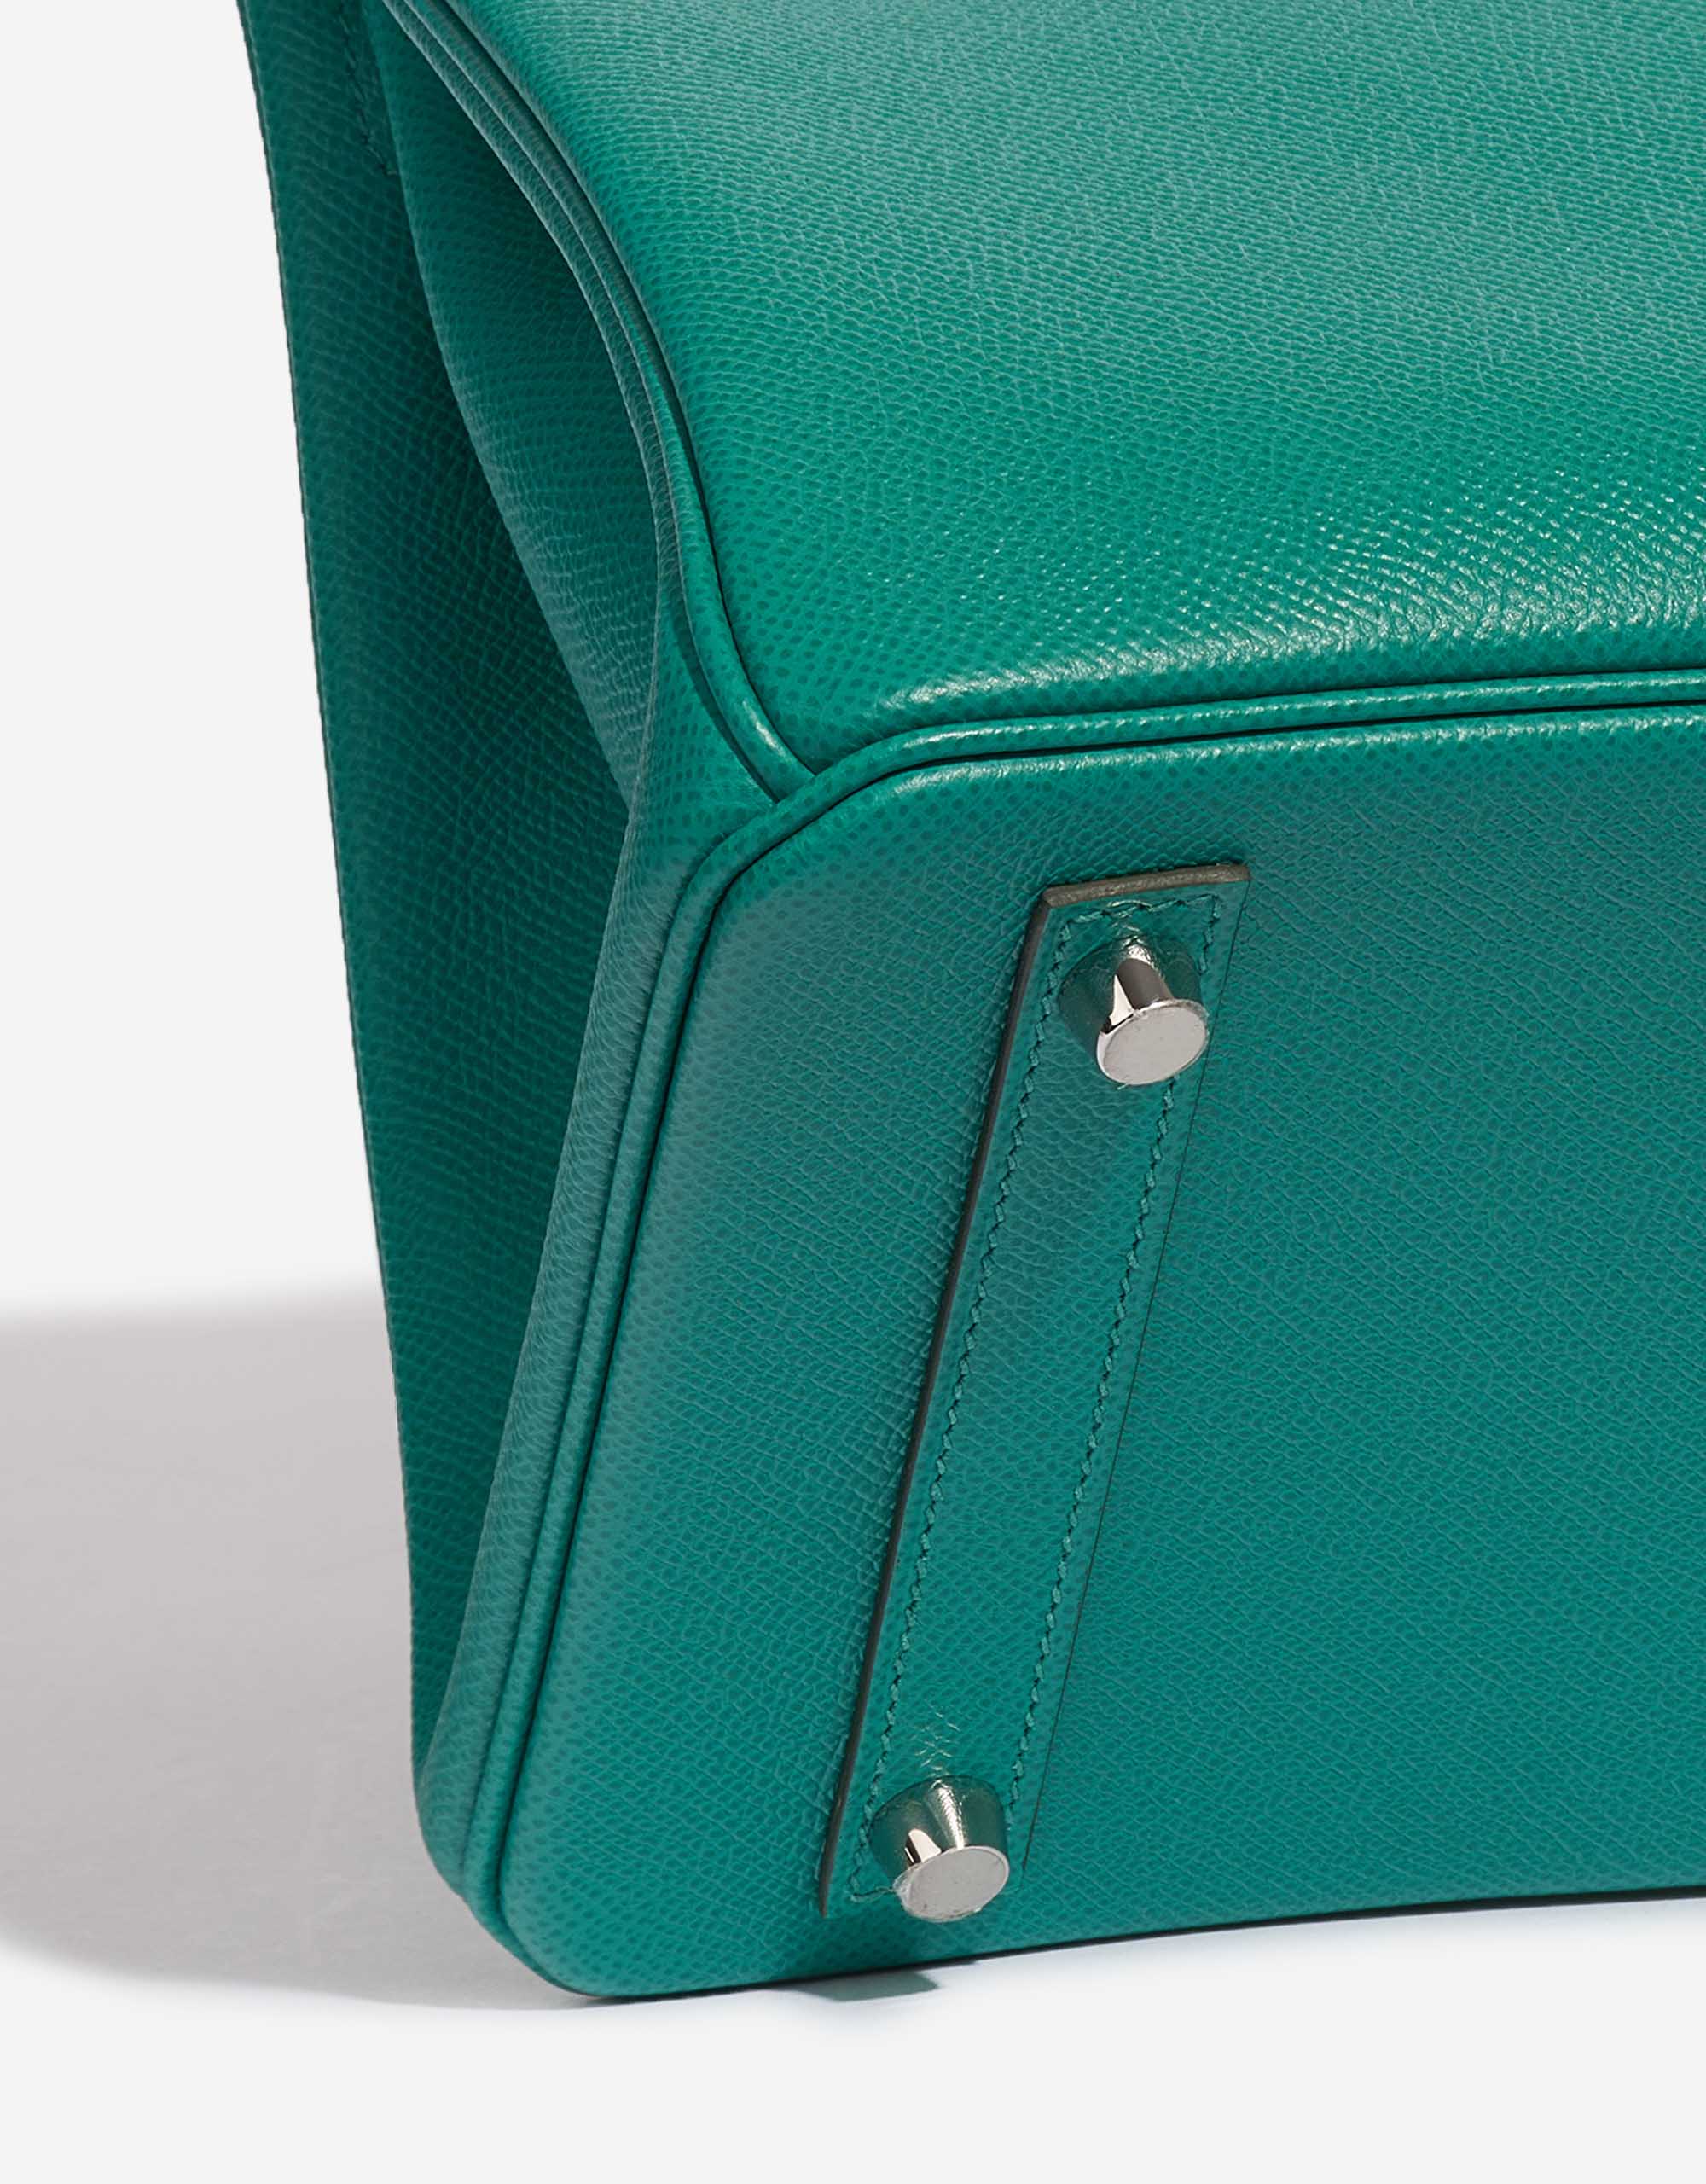 Pre-owned Hermès Tasche Birkin 30 Epsom Vert Jade Green Detail | Verkaufen Sie Ihre Designer-Tasche auf Saclab.com